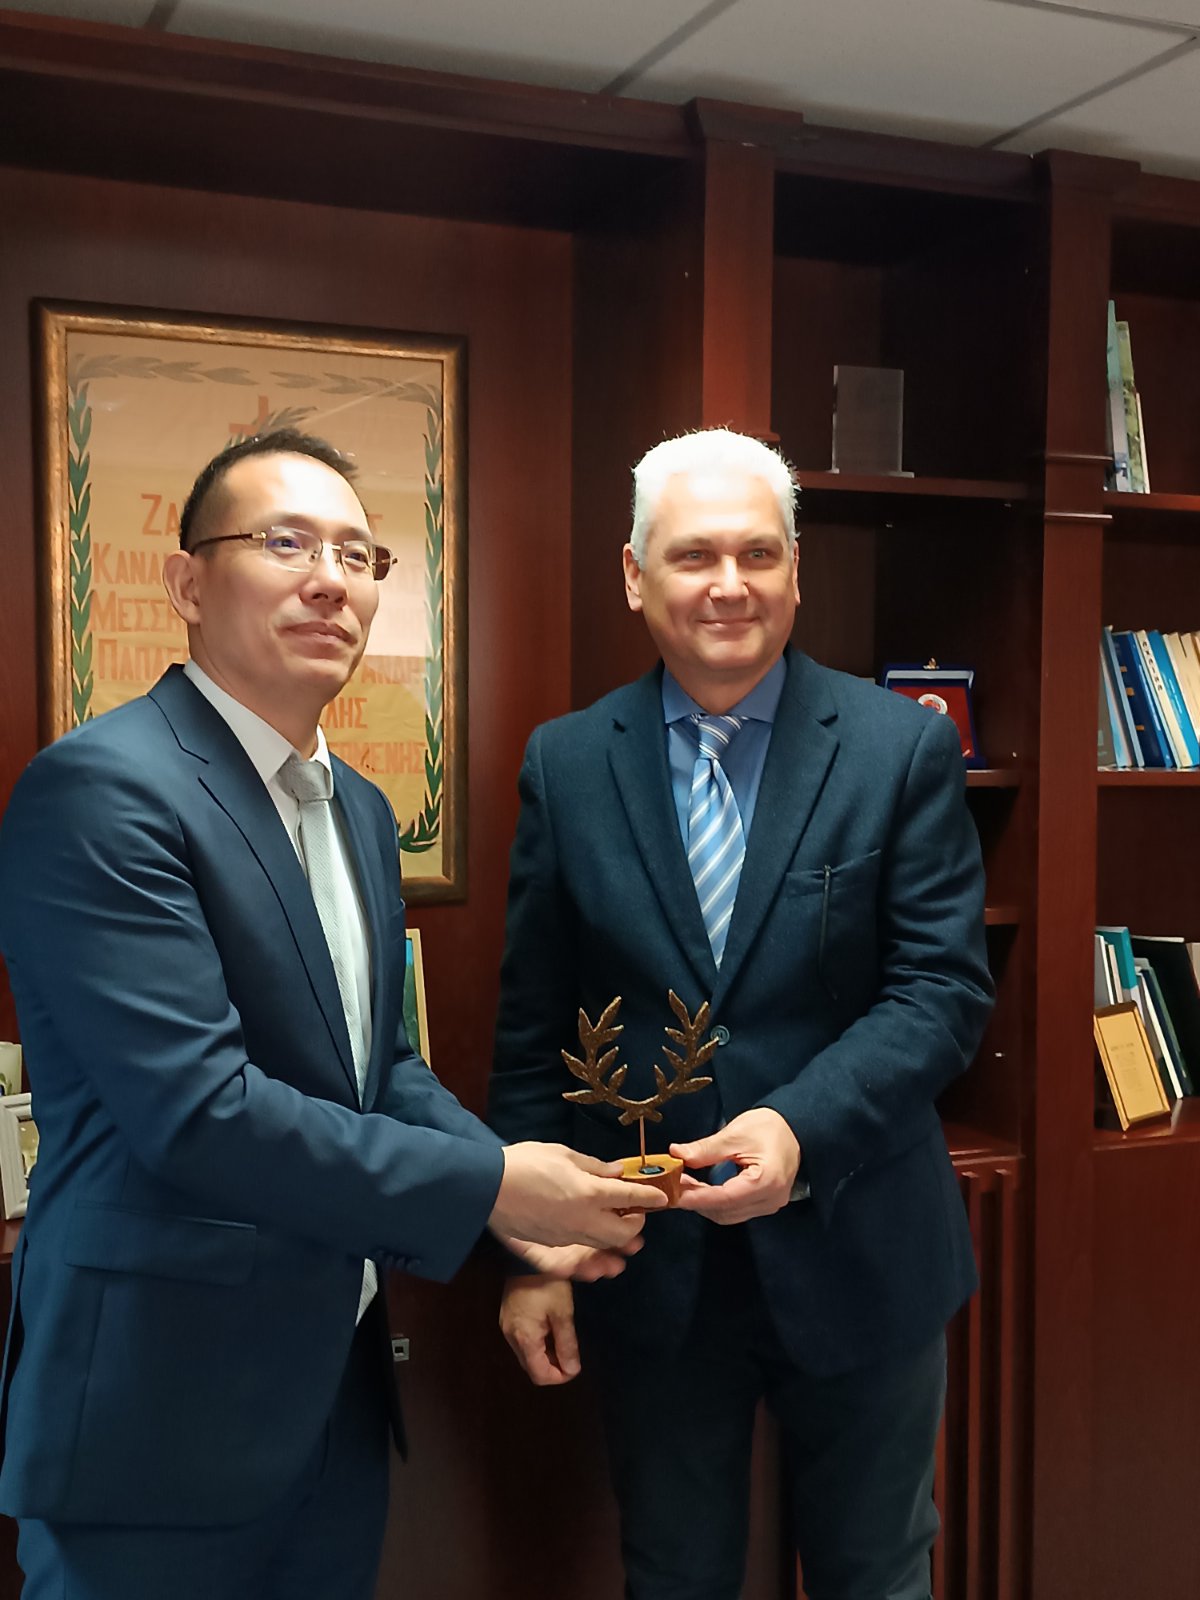 Αντιπροσωπεία Κινέζικου Πανεπιστημίου επισκέφθηκε τον αντιπεριφερειάρχη Αχαΐας Φωκίωνα Ζαΐμη